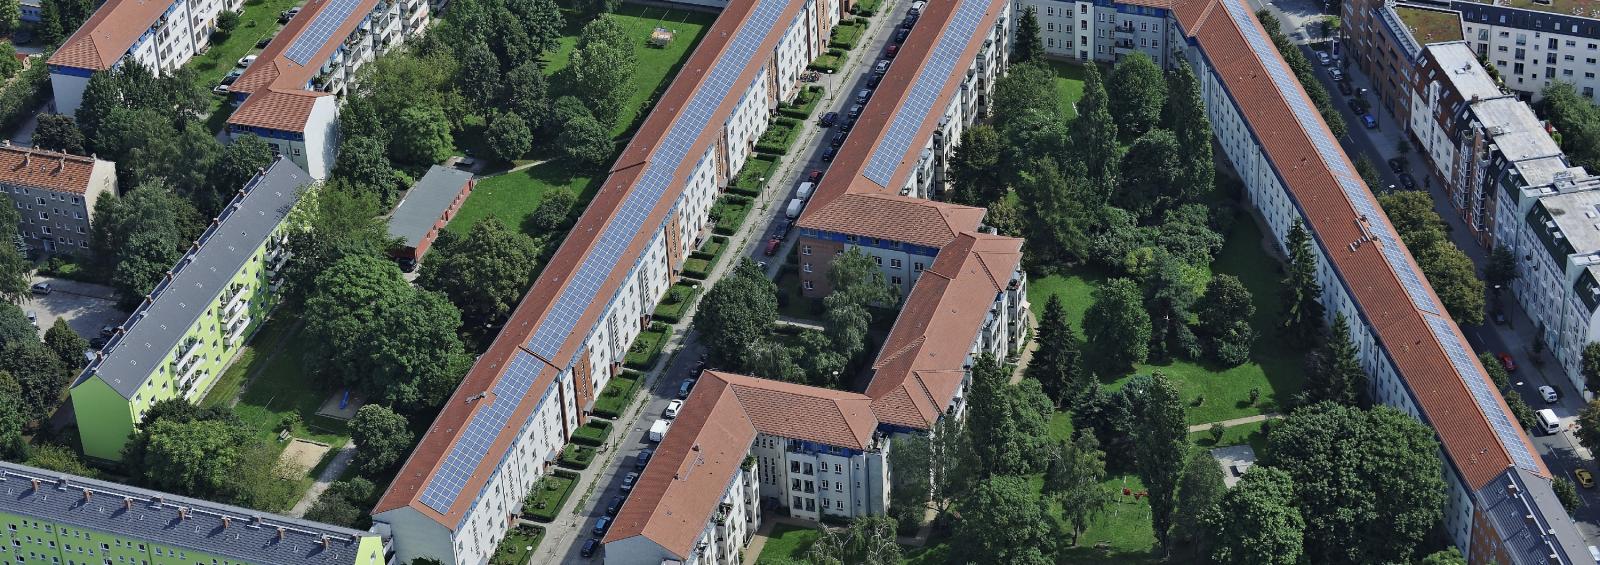 Luftaufnahme PV-Anlage auf Quartier in Weißensee